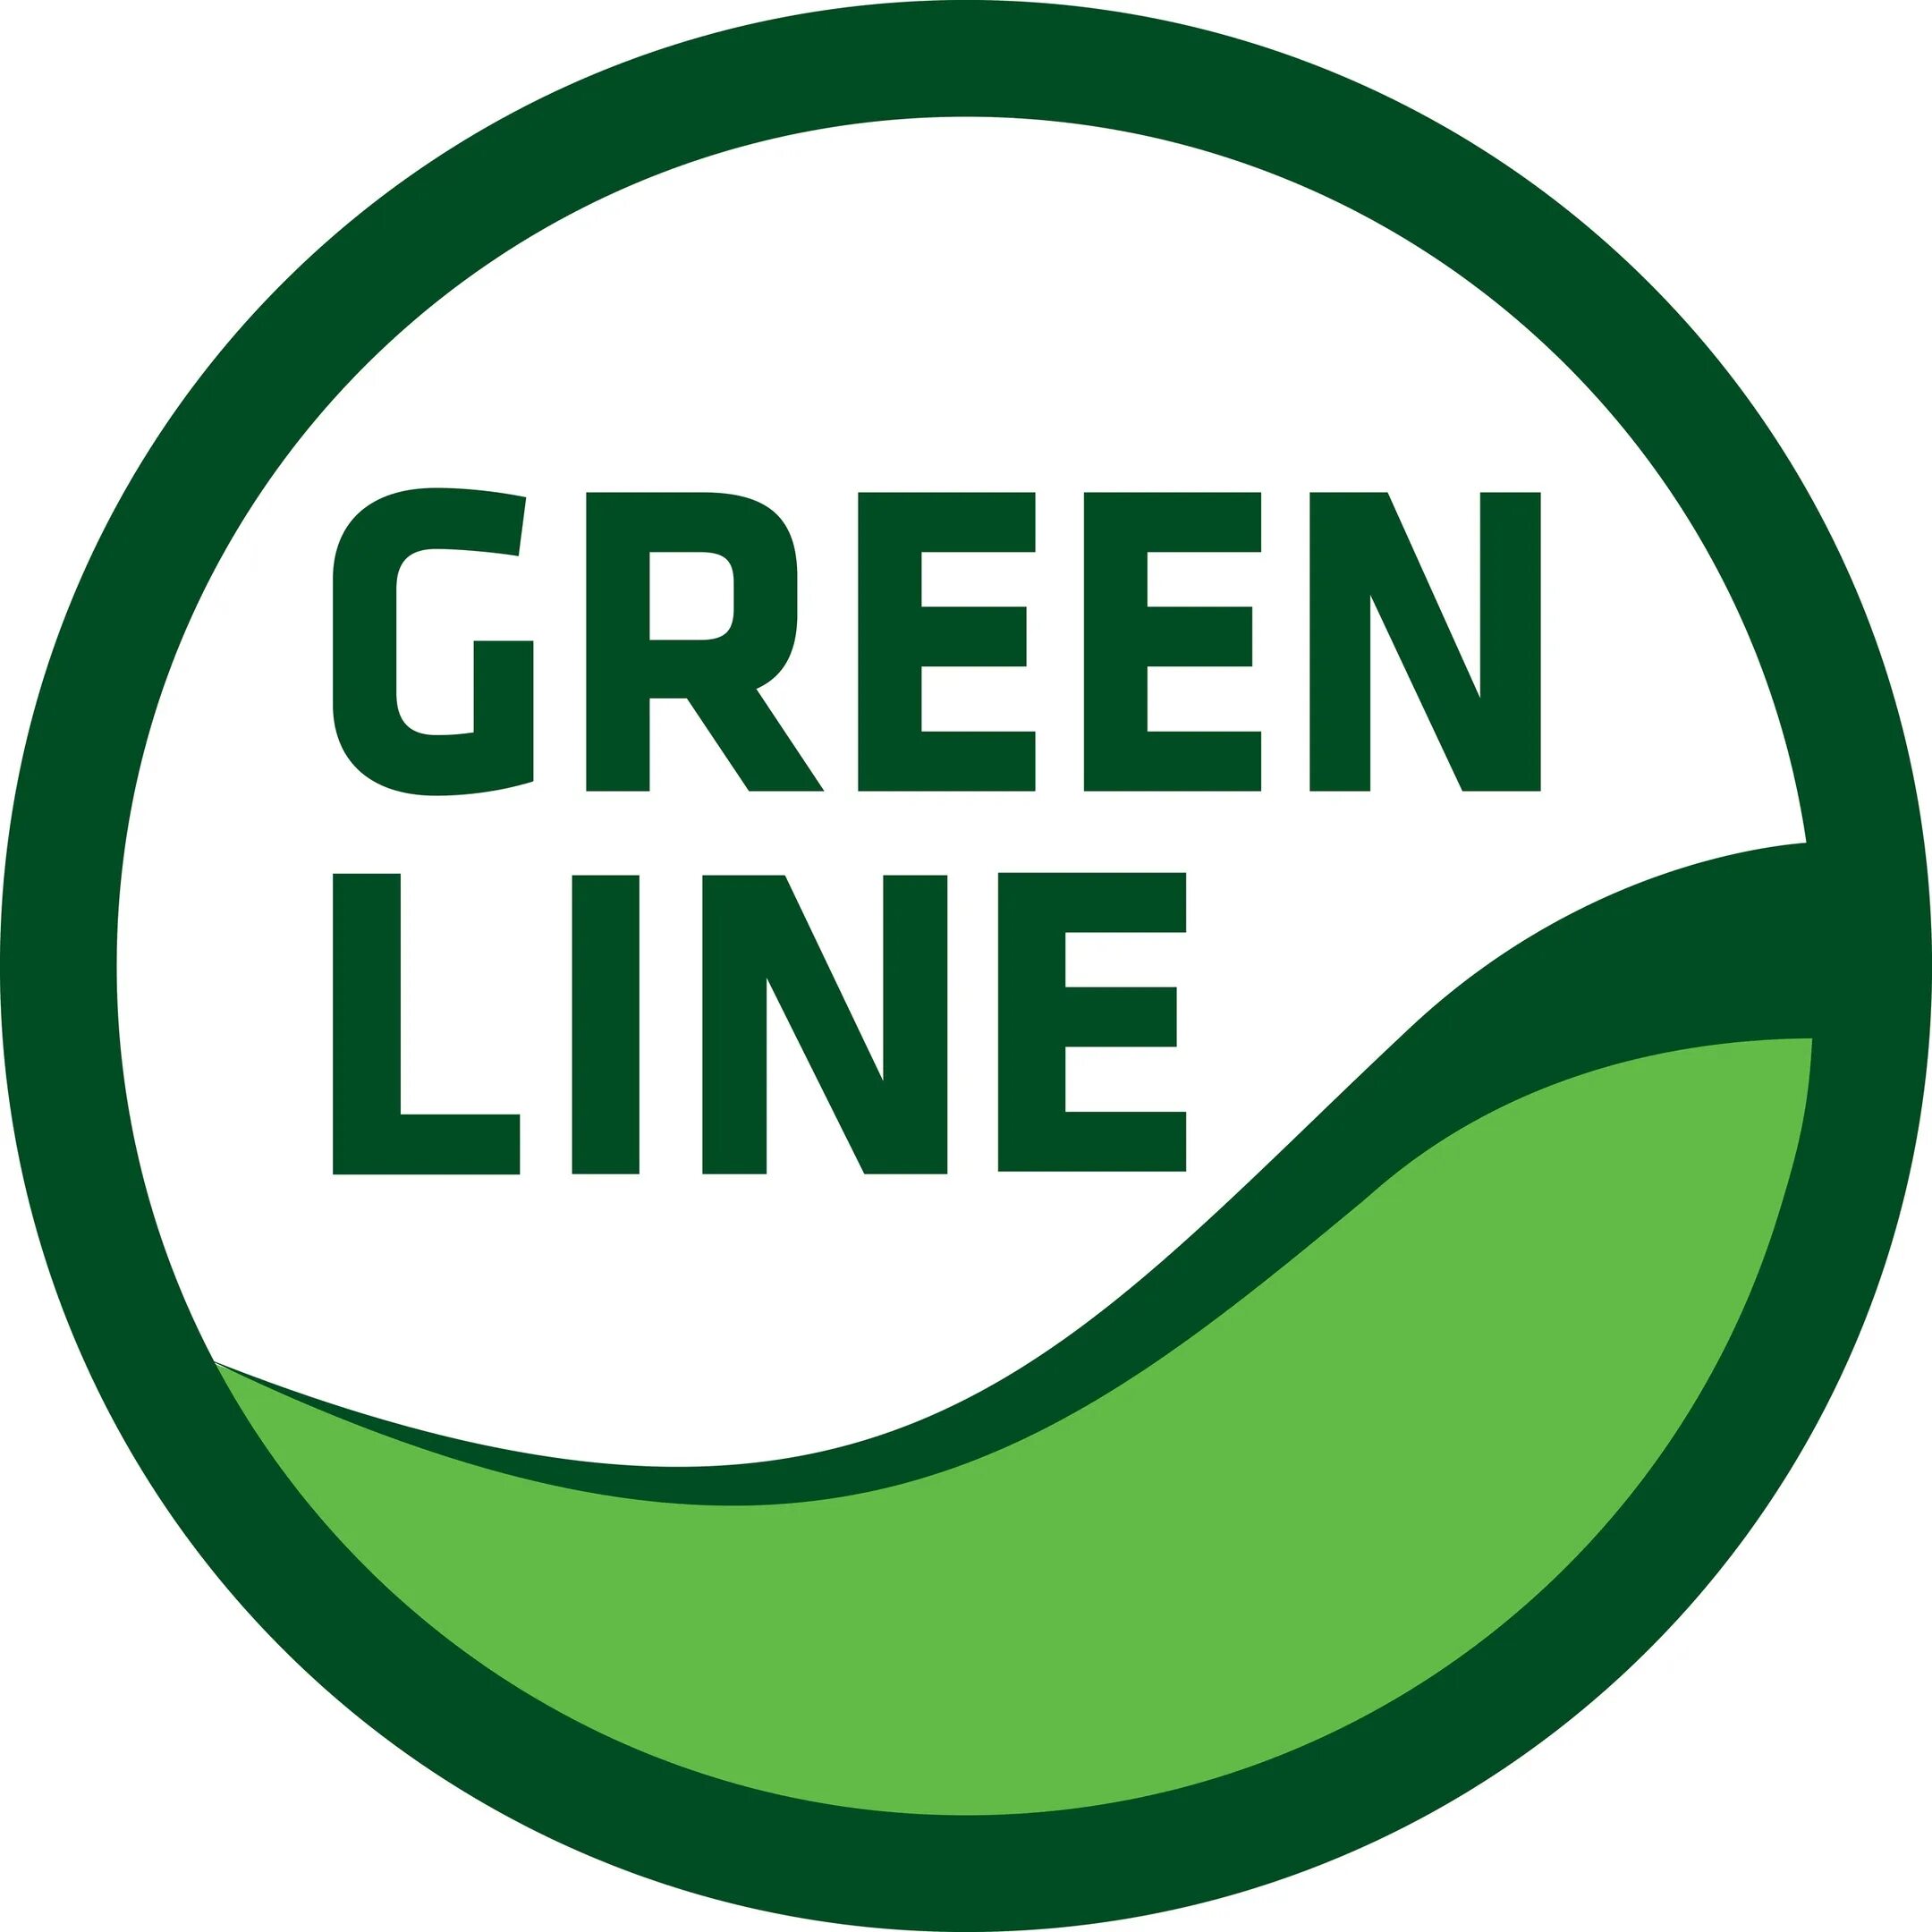 Ооо зеленые линии. Greenline логотип. Зеленая линия логотип. ООО Green line. ООО зеленые линии логотип.